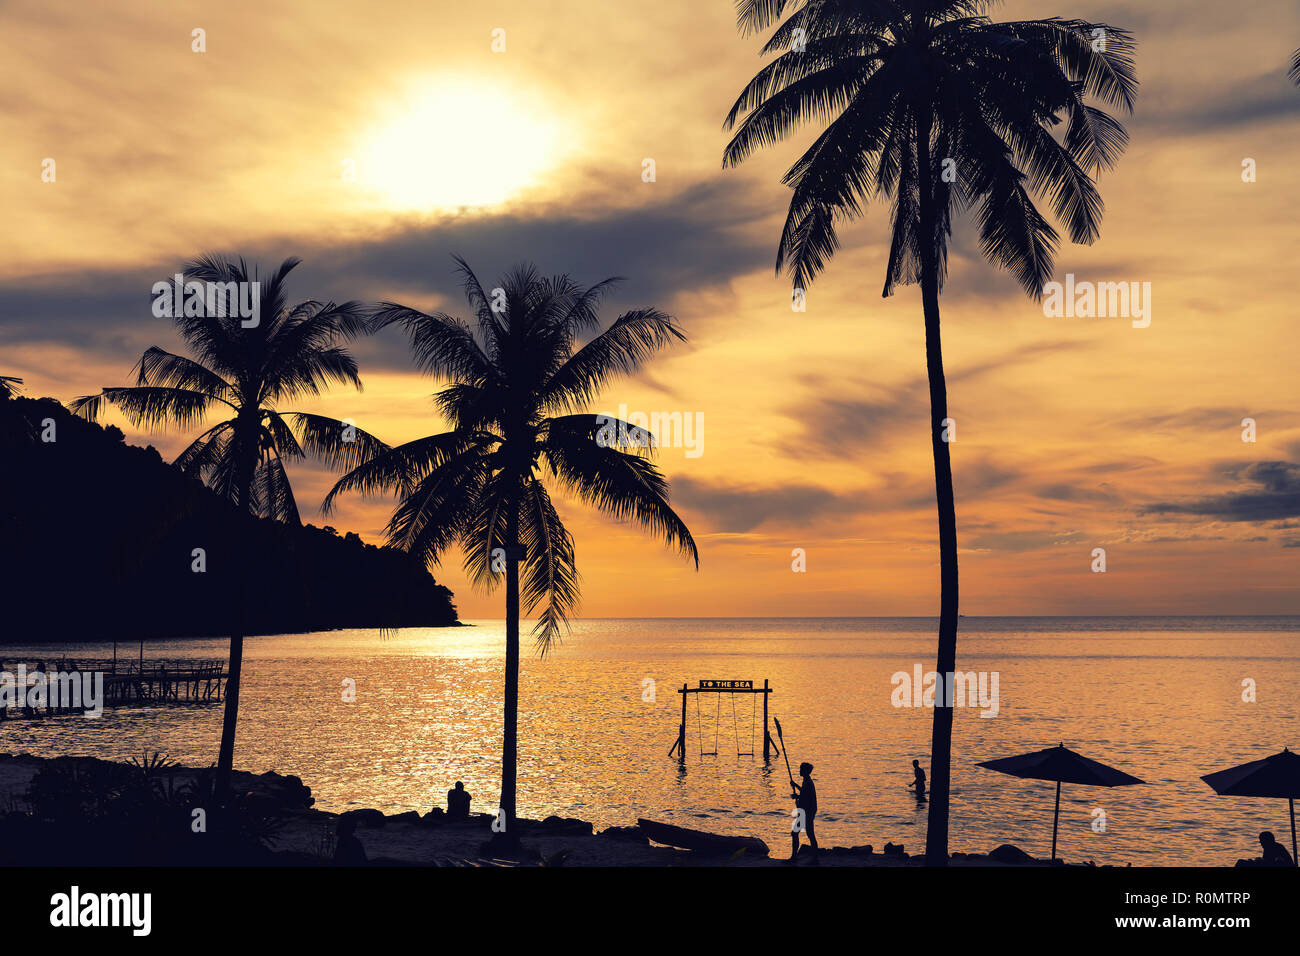 Amazing nature paysage tropical beach et la mer sur fond de ciel coloré au coucher du soleil Banque D'Images